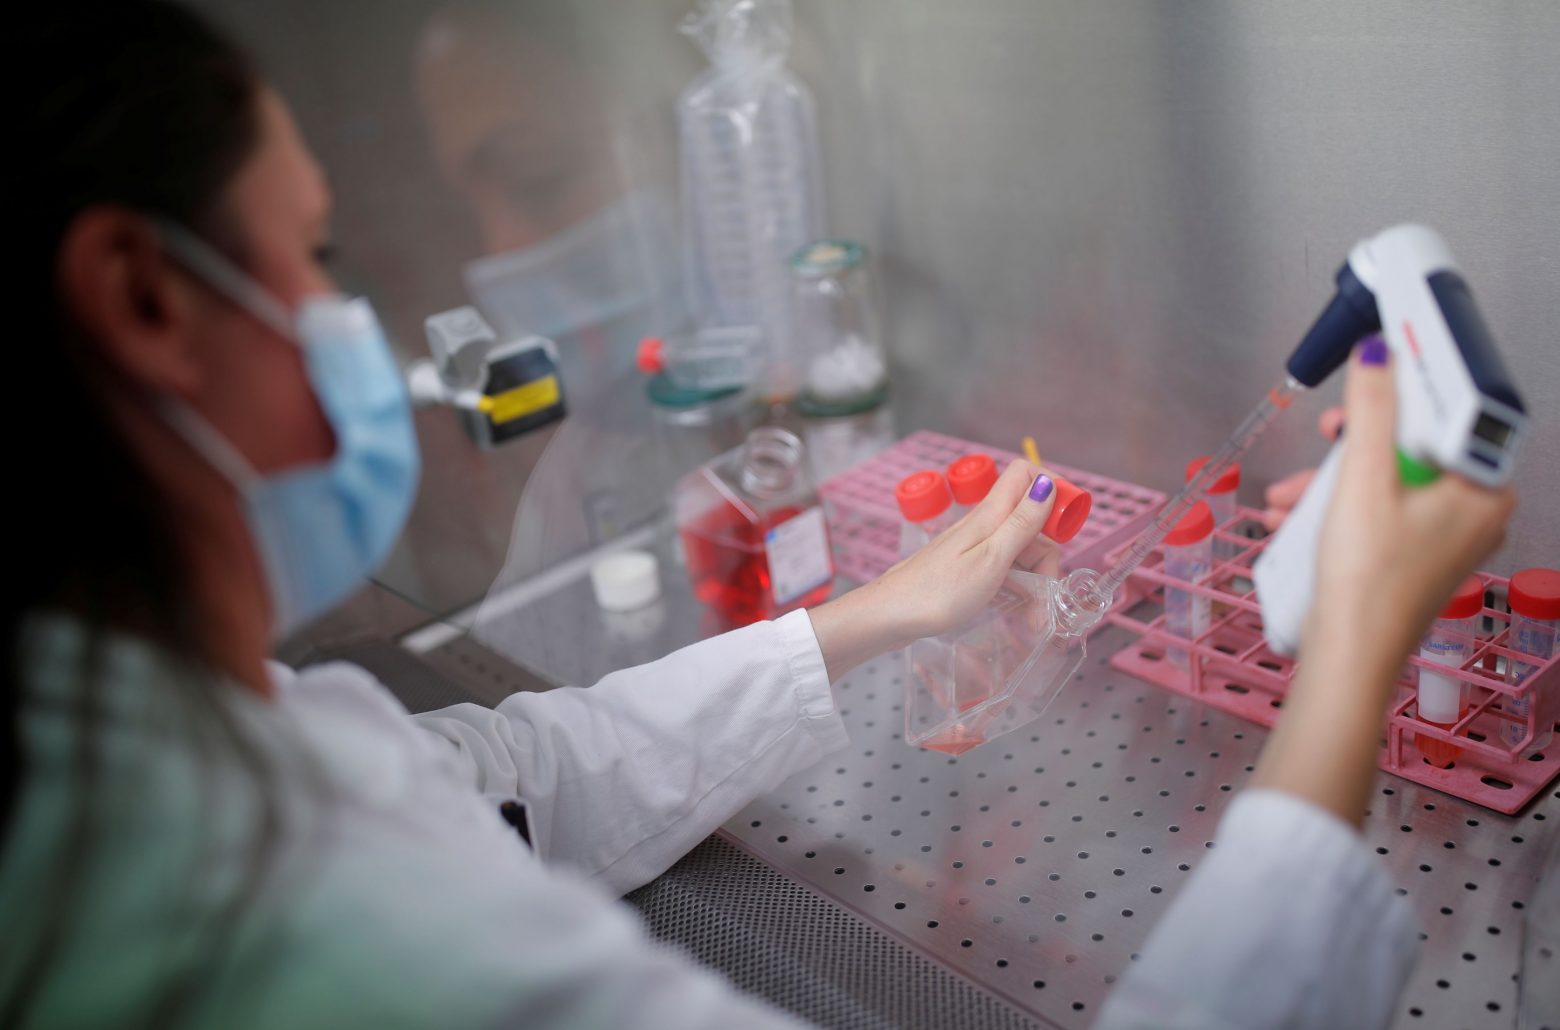 Κοροναϊός - Ρινικό εμβόλιο ετοιμάζει η Γαλλία - Θετικές οι προκλινικές δοκιμές